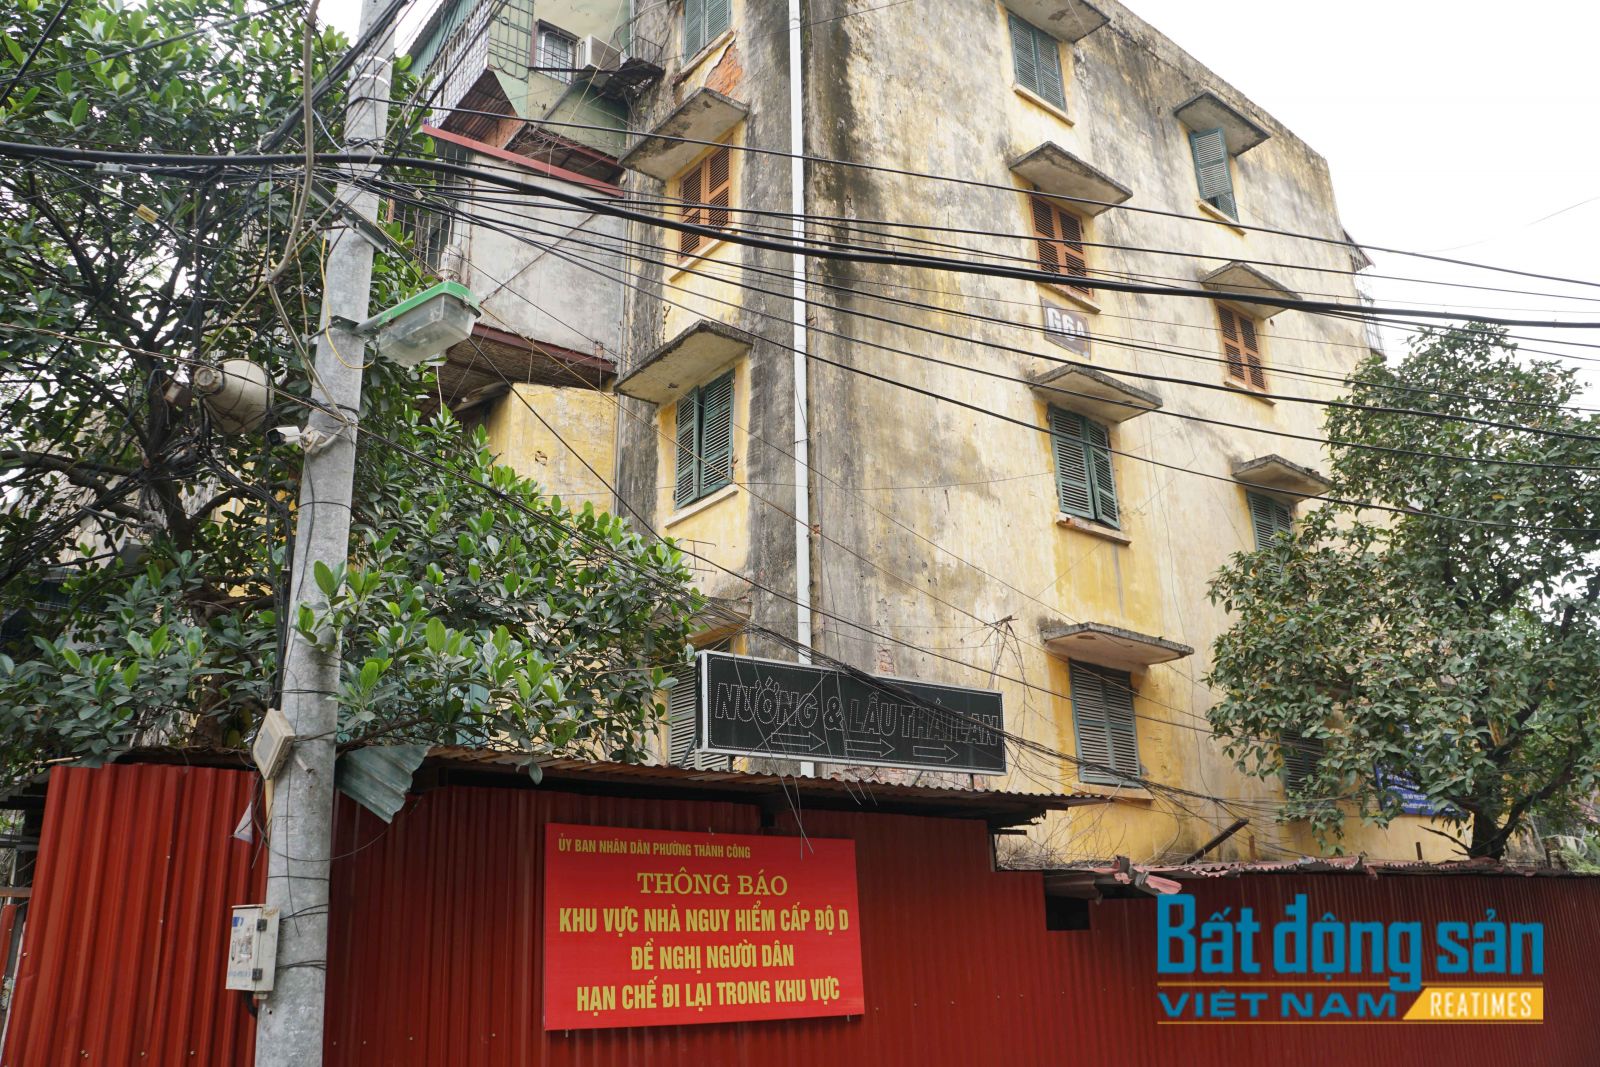 Reatimes, Tùng Dương, Nhà G6A Thành Công, quây tôn nhà G6A, cải tạo chung cư cũ Hà Nội